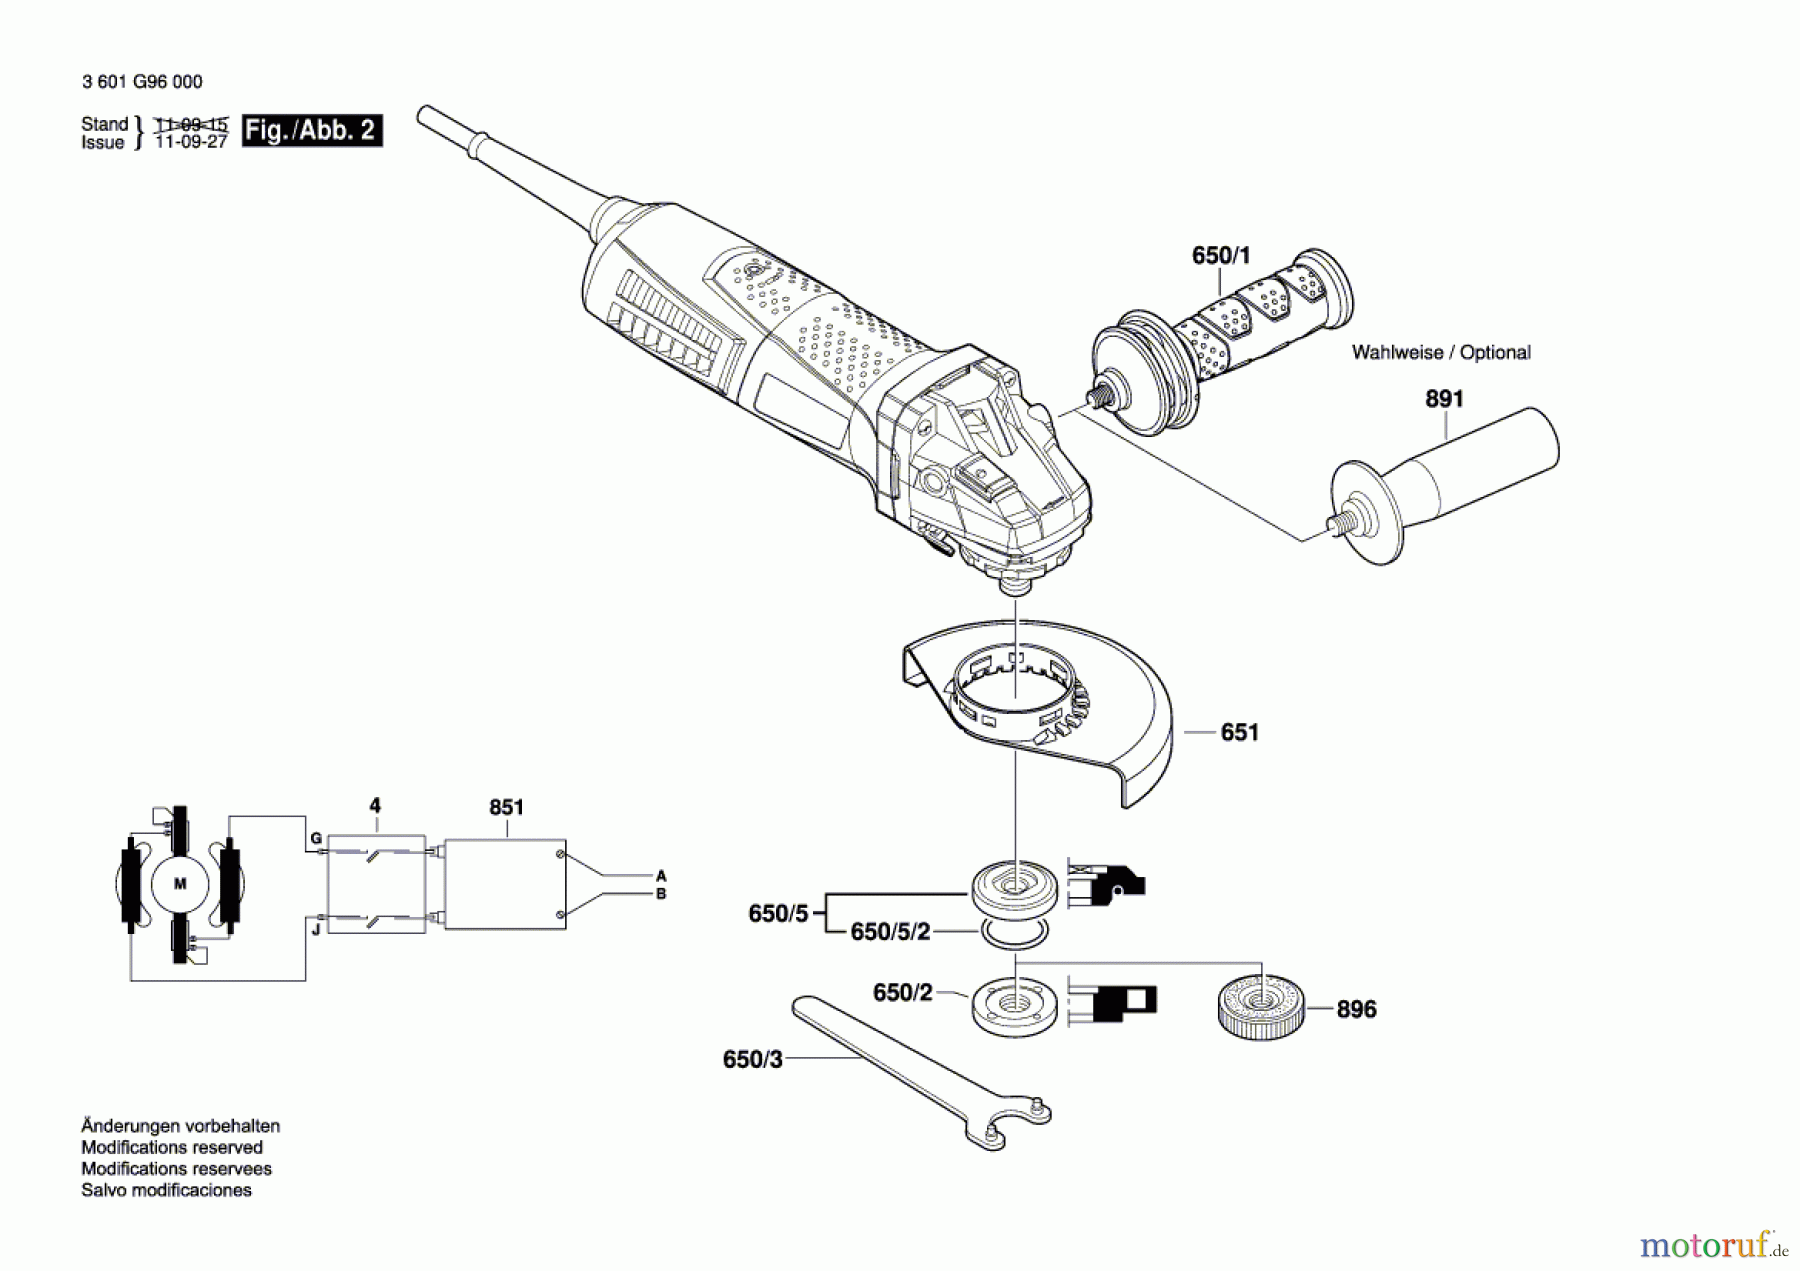  Bosch Werkzeug Winkelschleifer GWS 15-125 CIE Seite 2